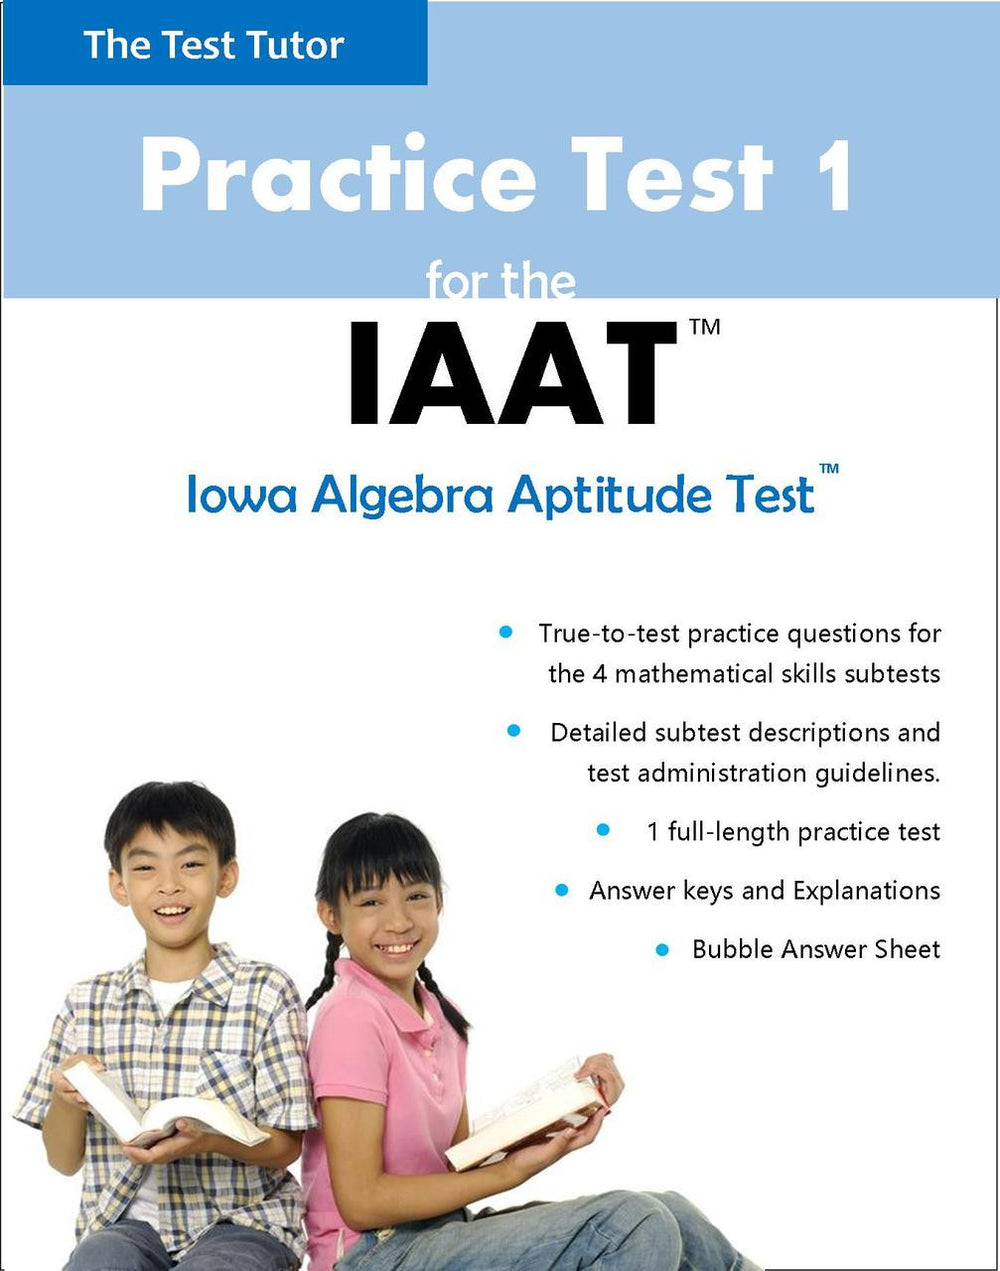 Iowa Algebra Aptitude Test IAAT Practice Test Tagged IAAT The Test Tutor